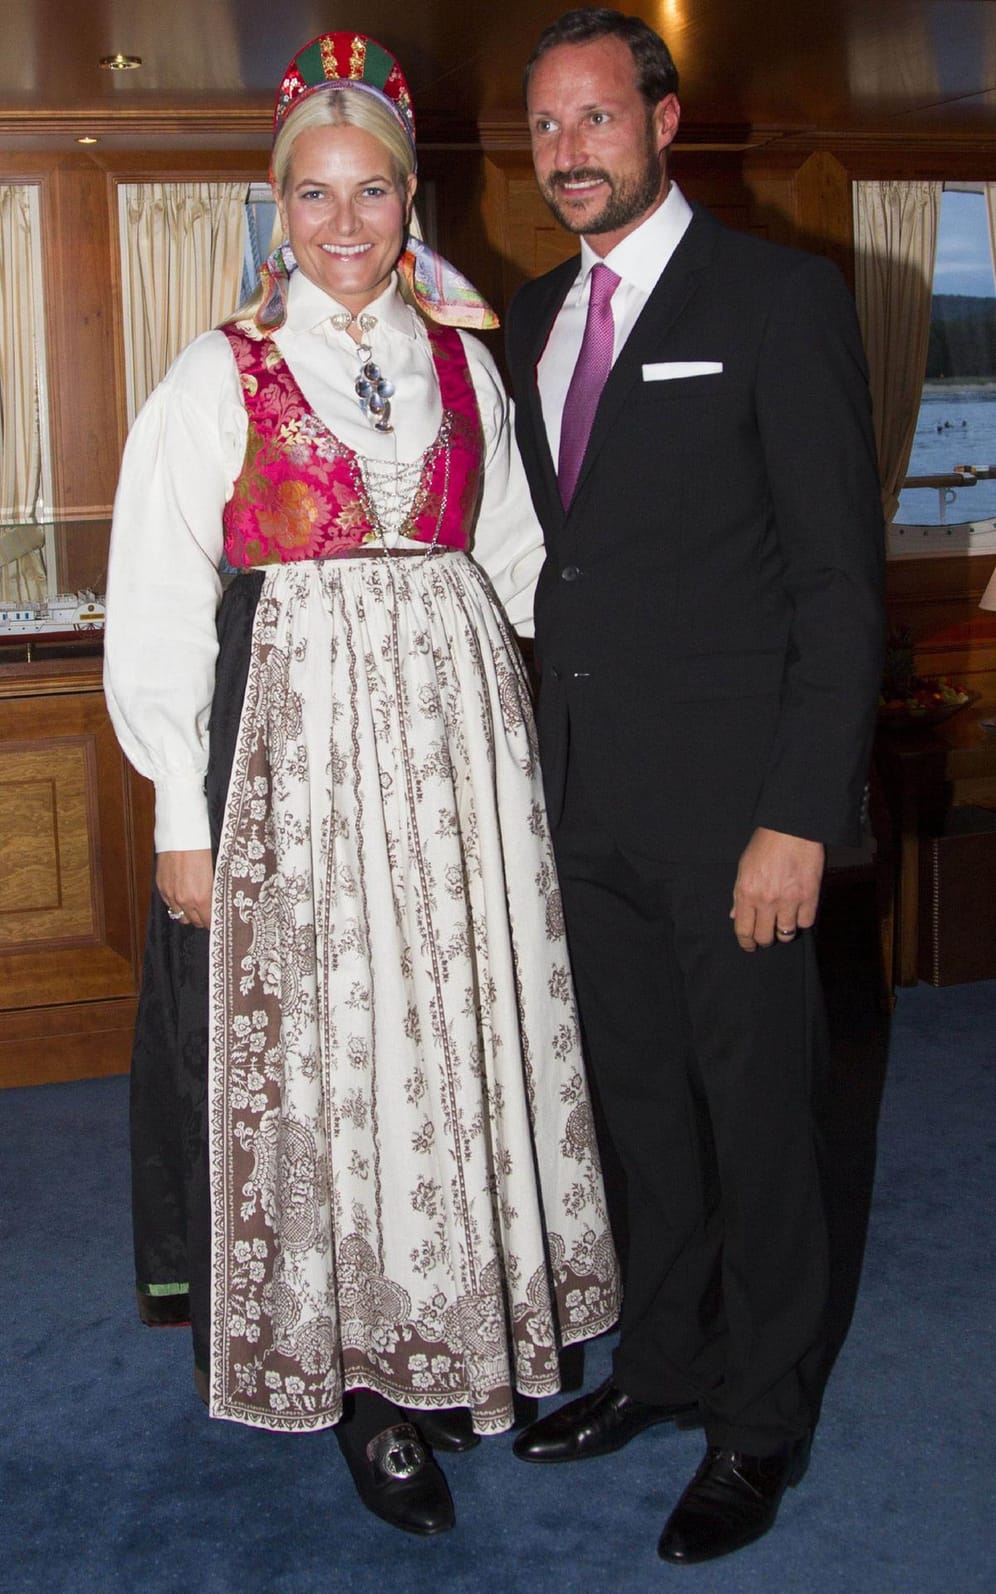 Mette-Marit und Haakon auf der Norge, der Yacht der Königsfamilie.